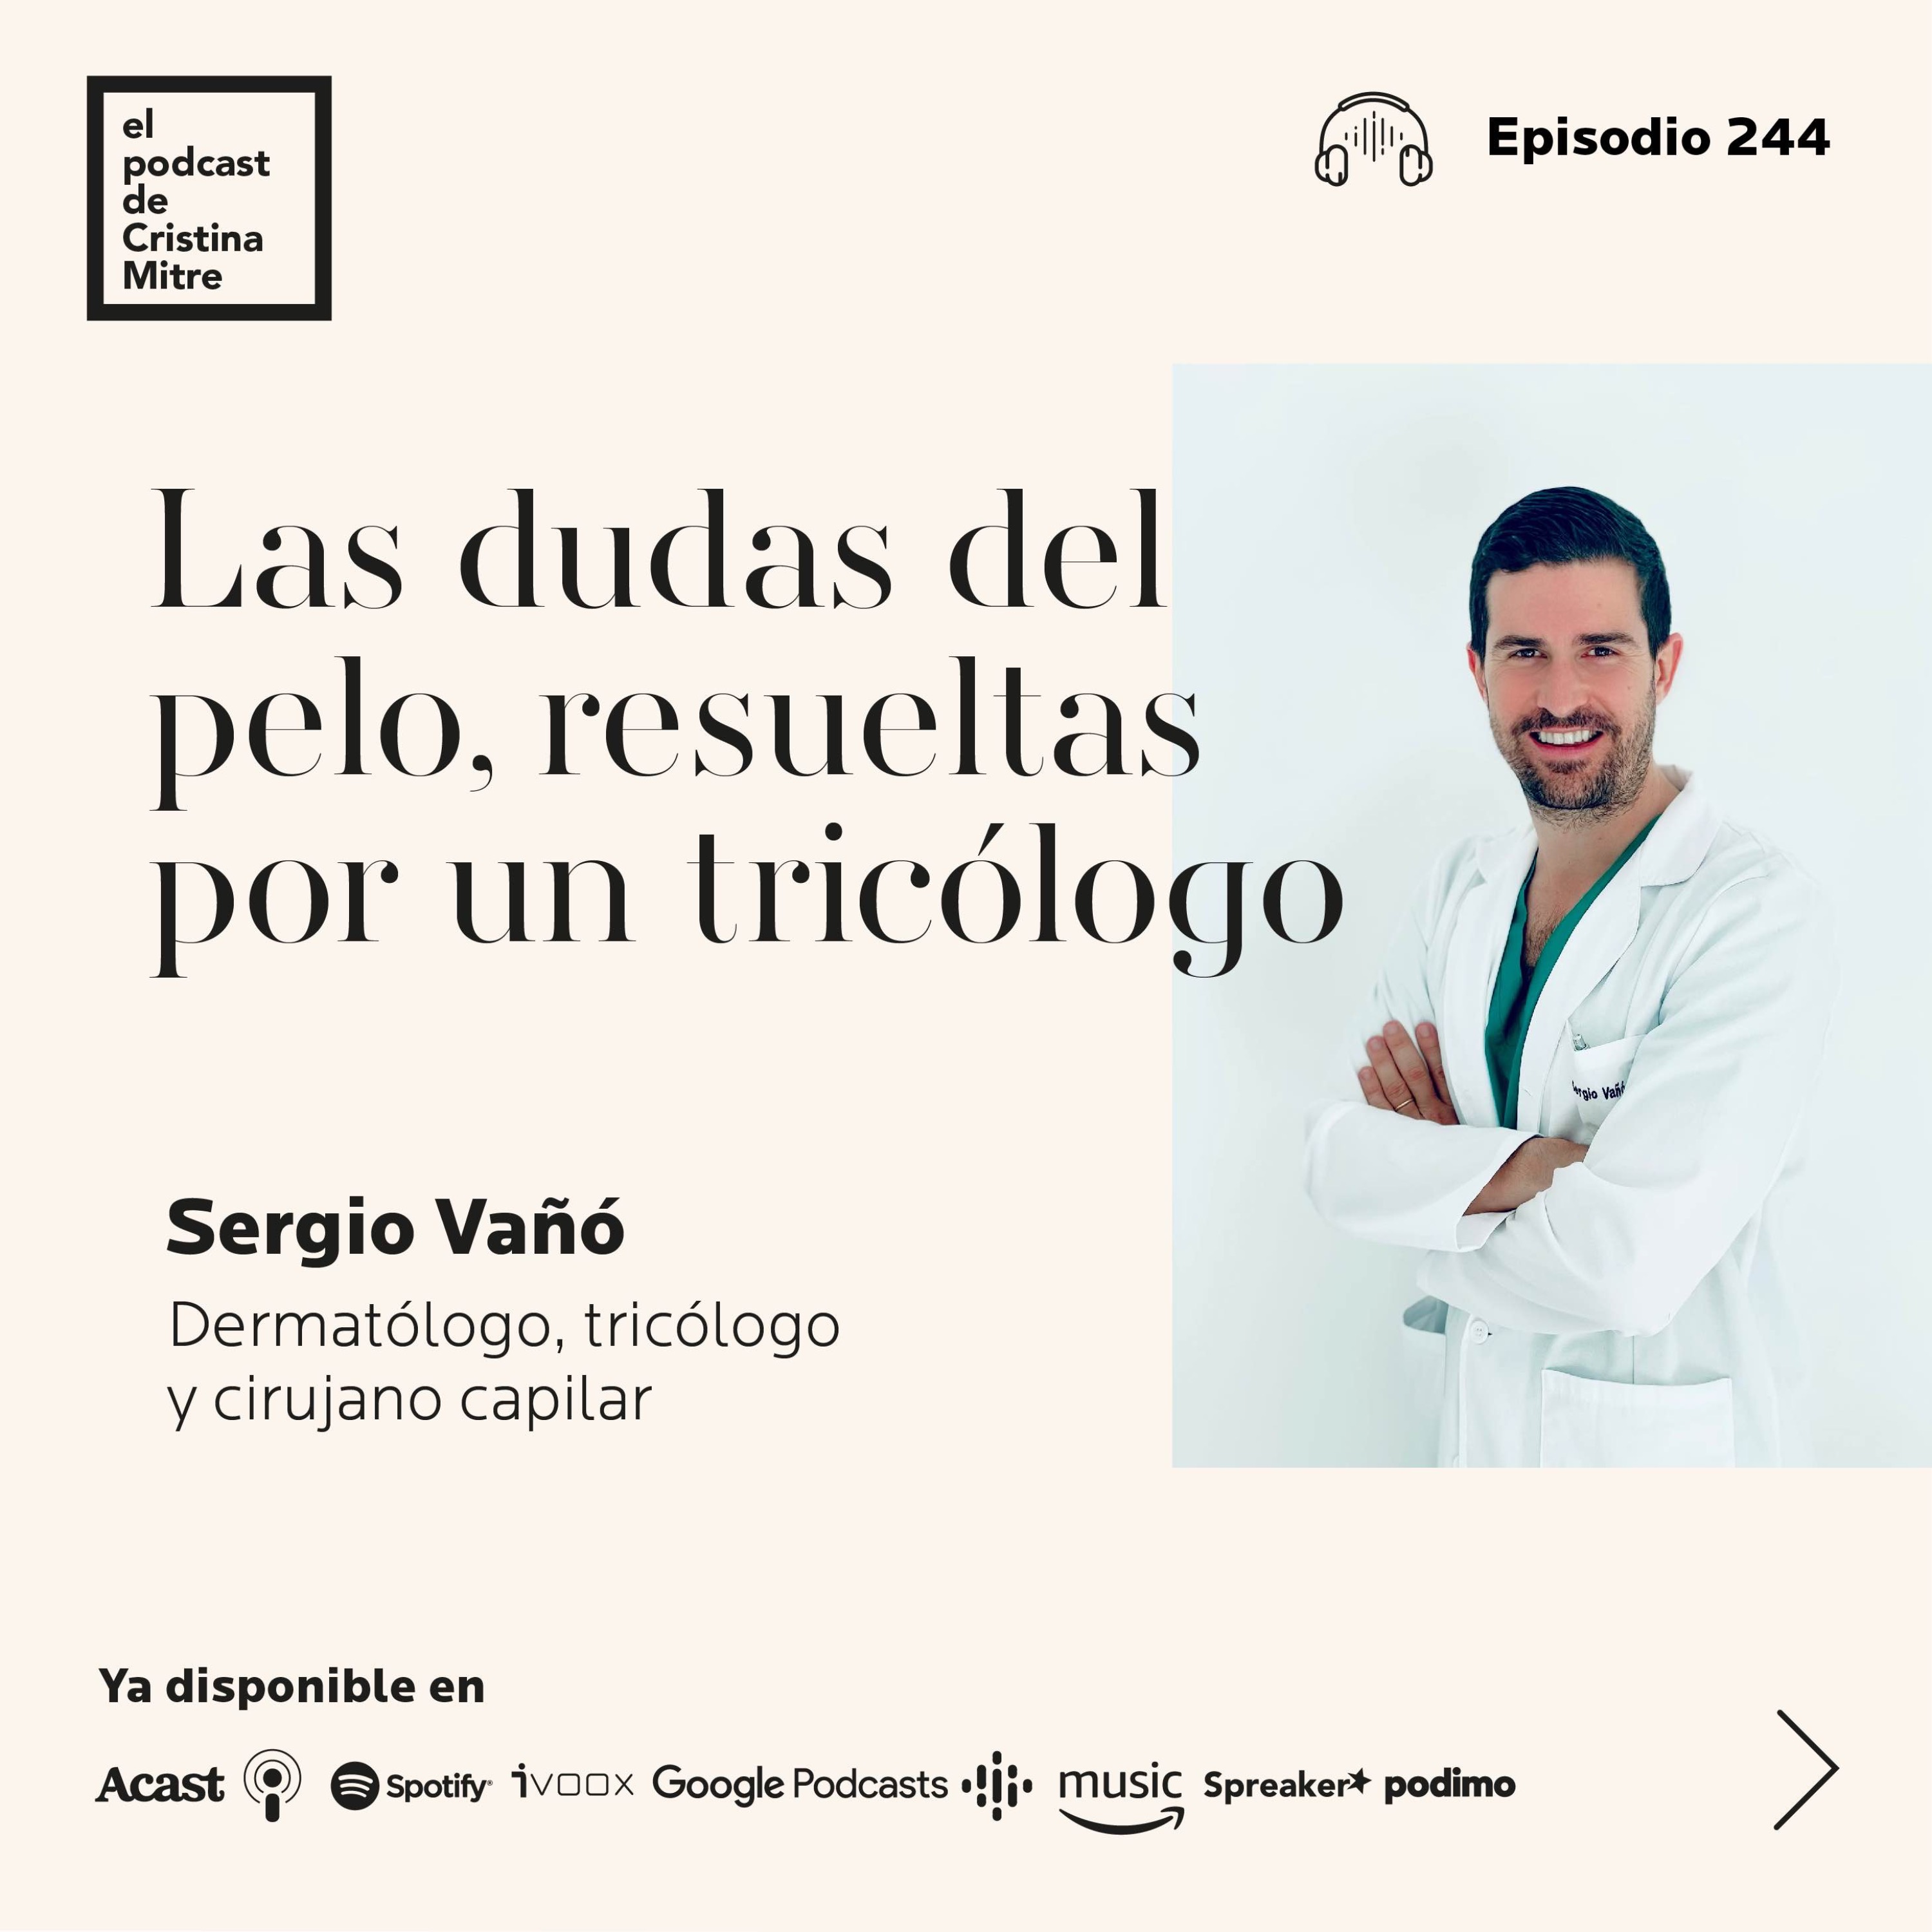 Las dudas del pelo, resueltas por un tricólogo, con Sergio Vañó. Episodio 244